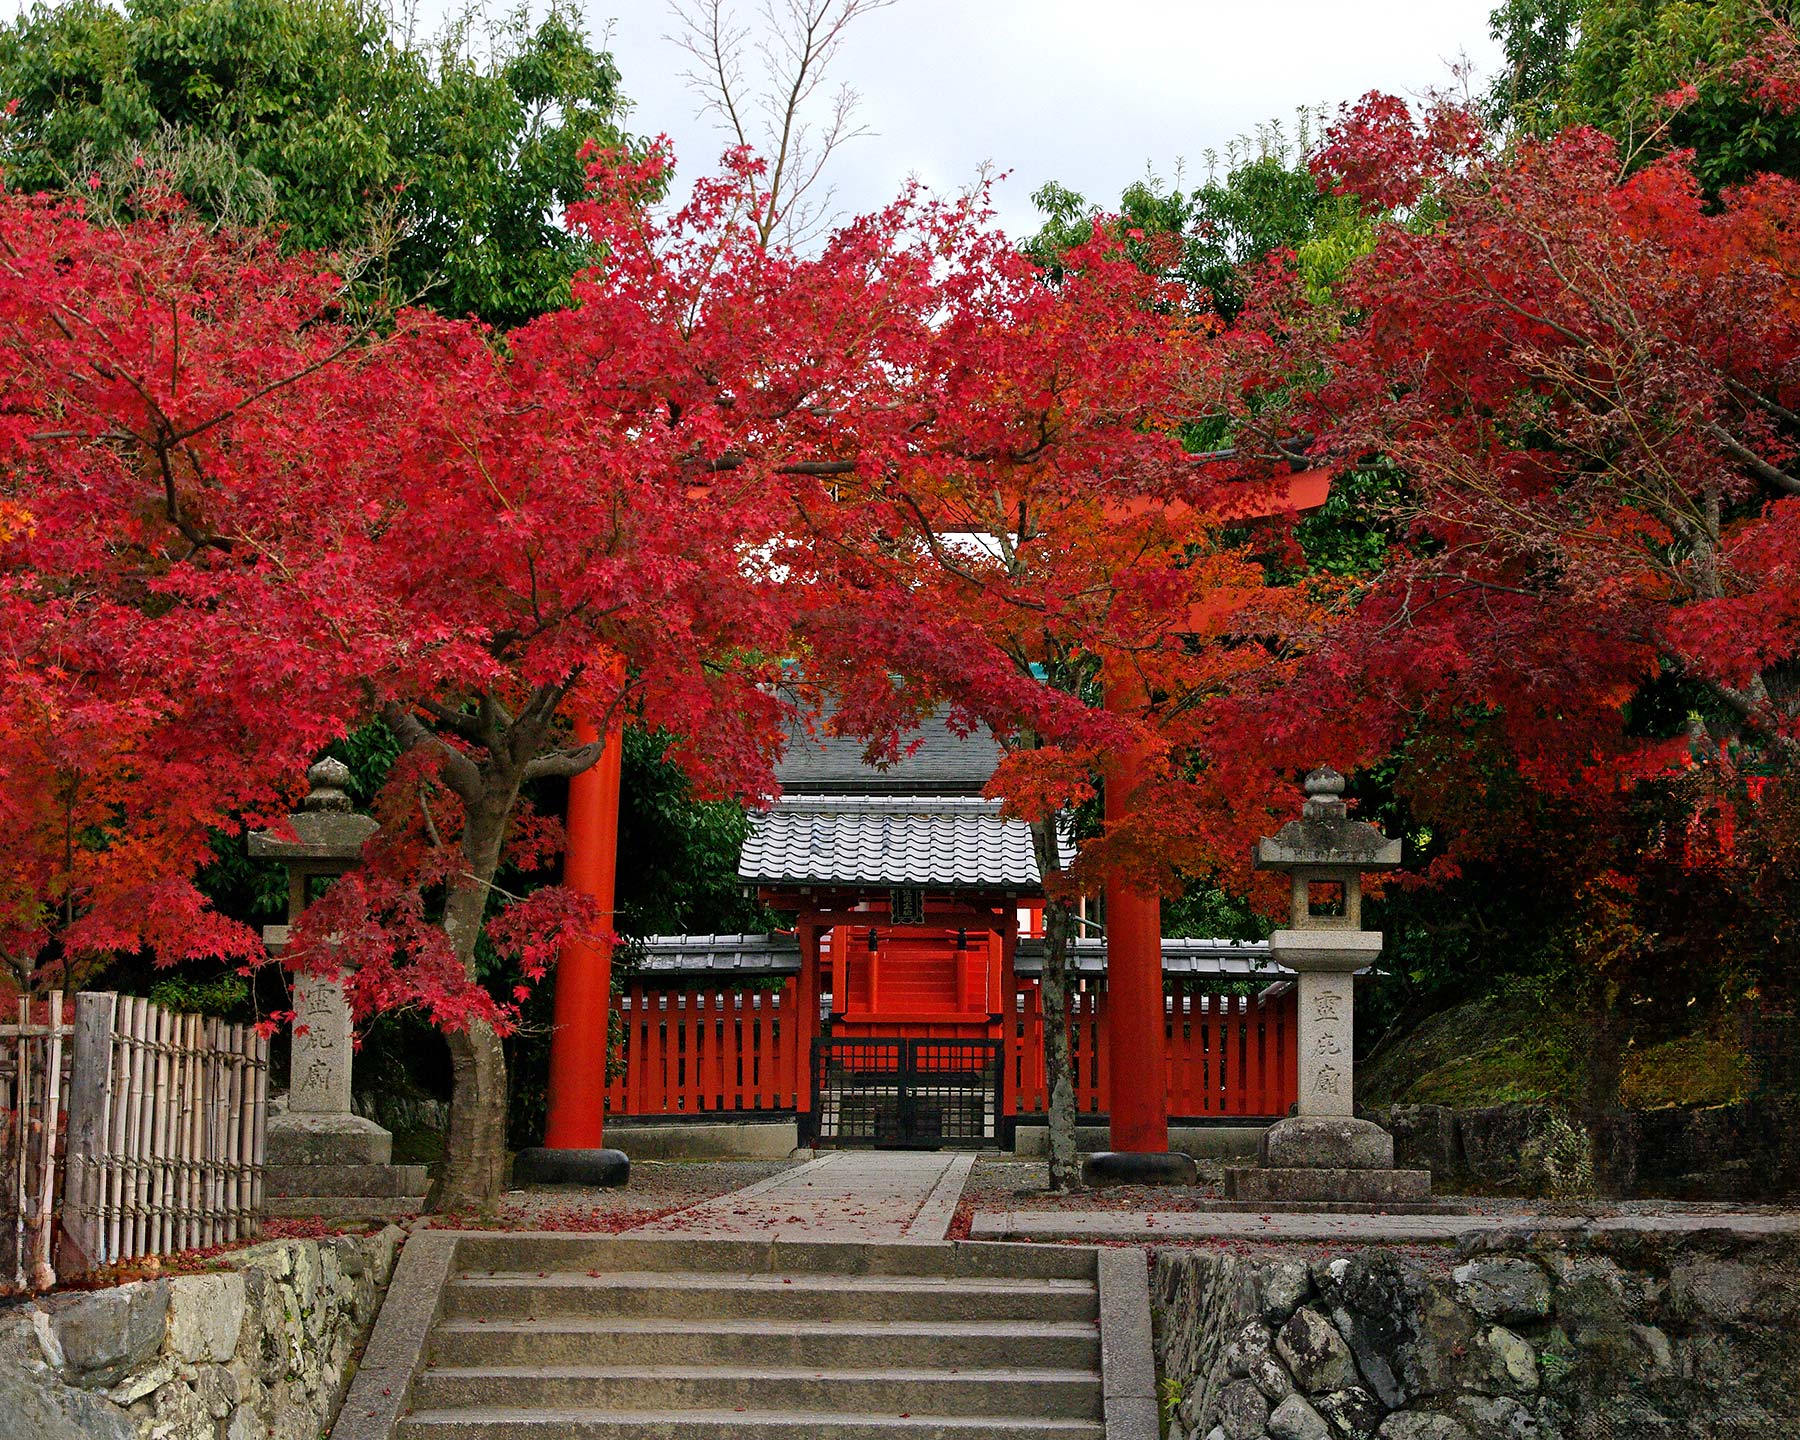 Acer plamatum at Tenryu-Ji Temple, Kyoto, Japan.